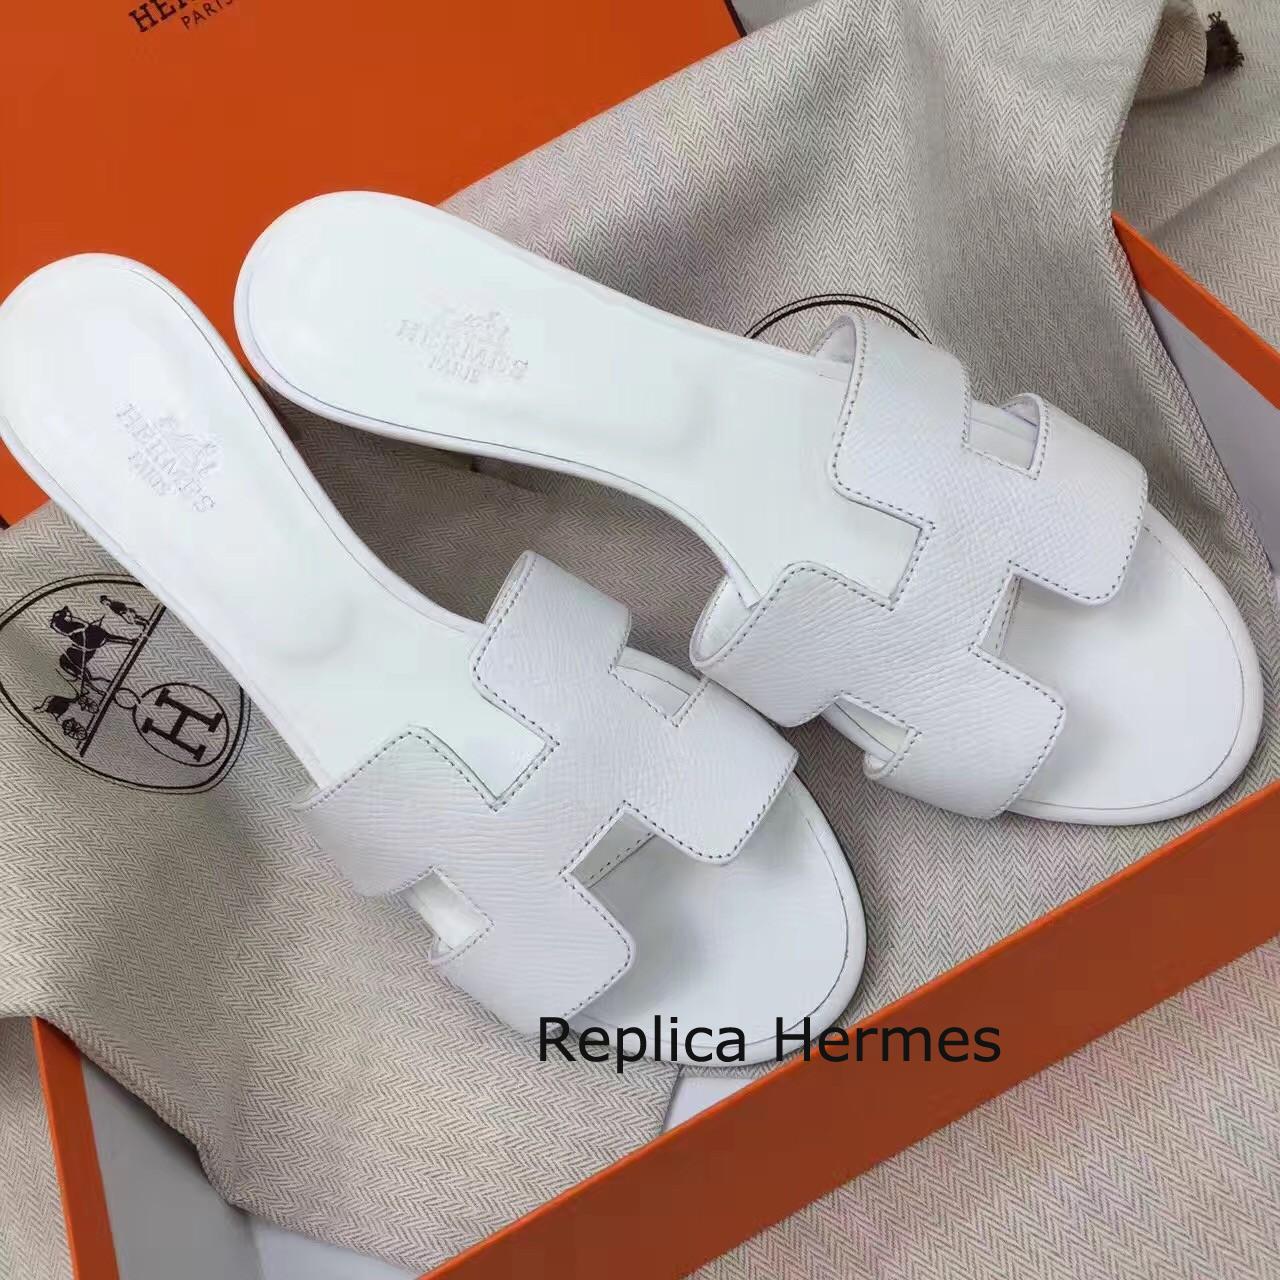 Replica Hermes White Epsom Oasis Sandals